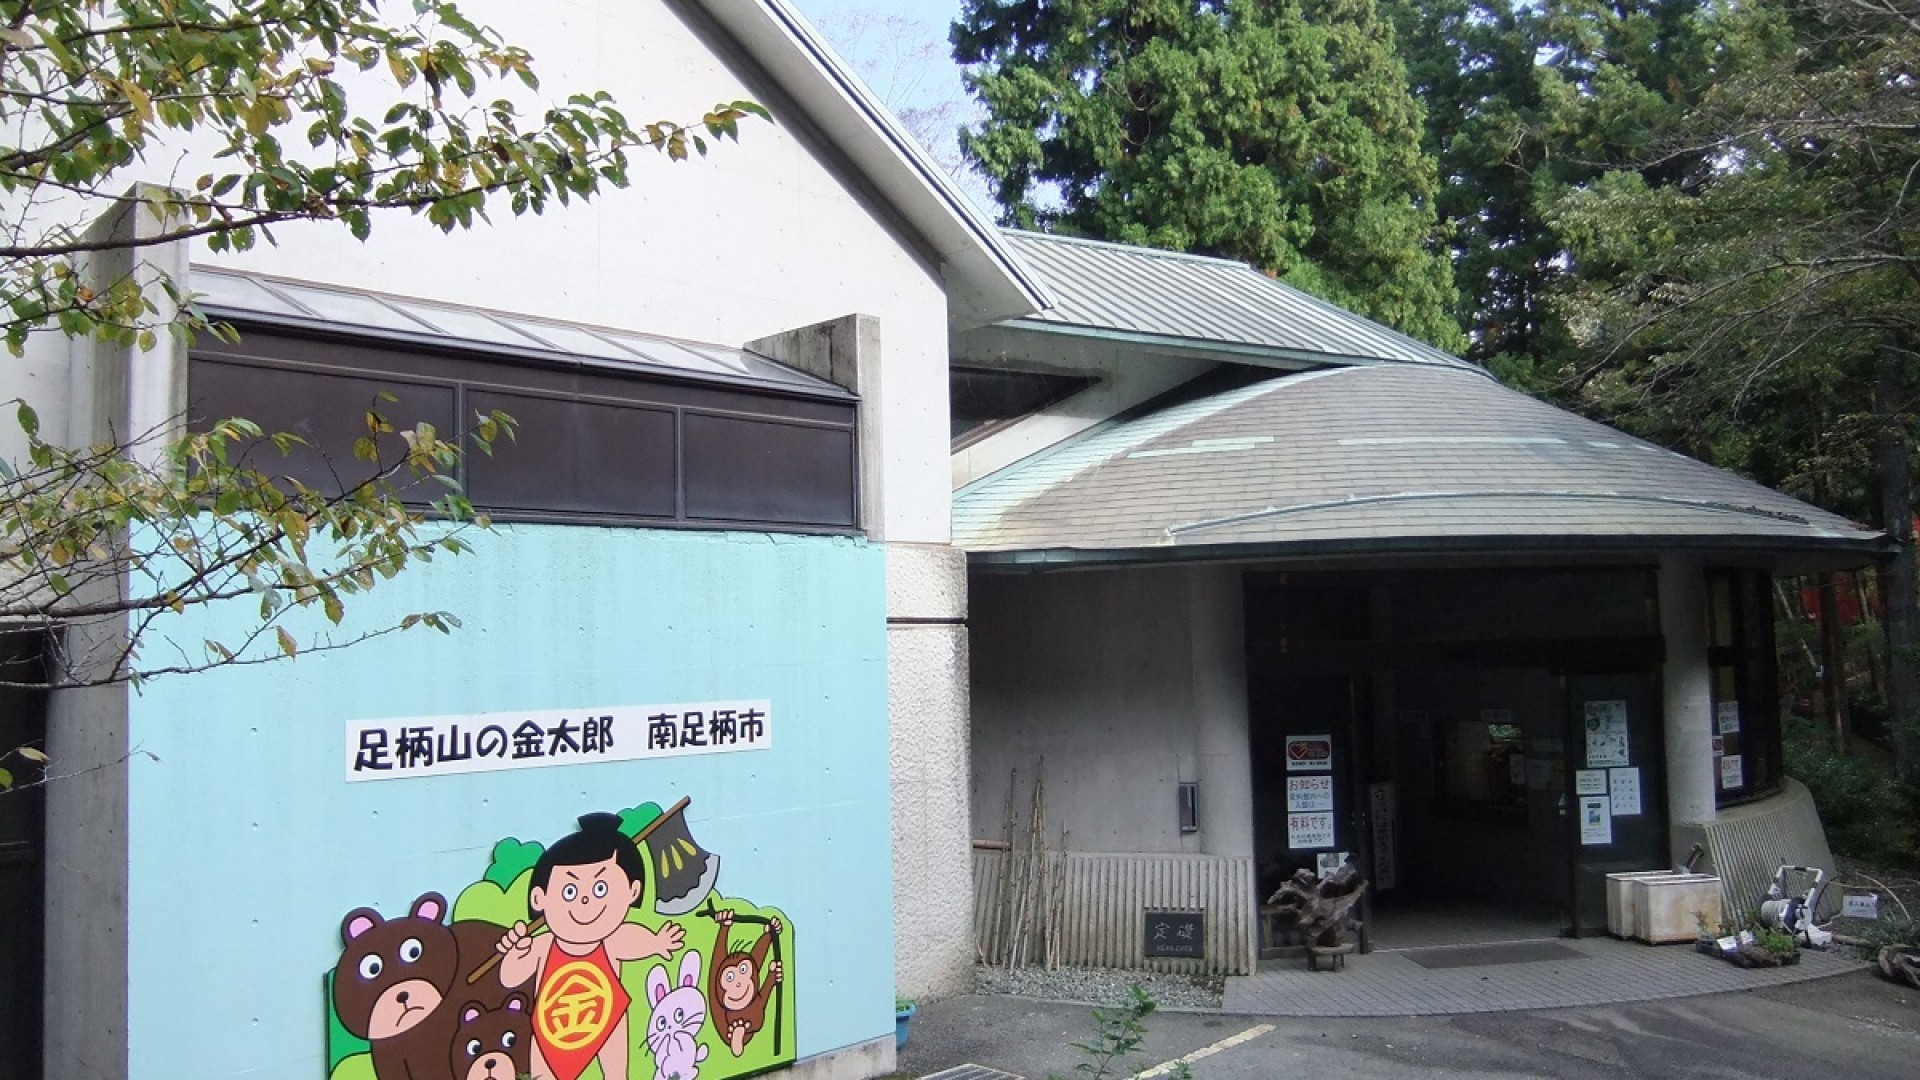 Le musée folklorique Minamiashigara 